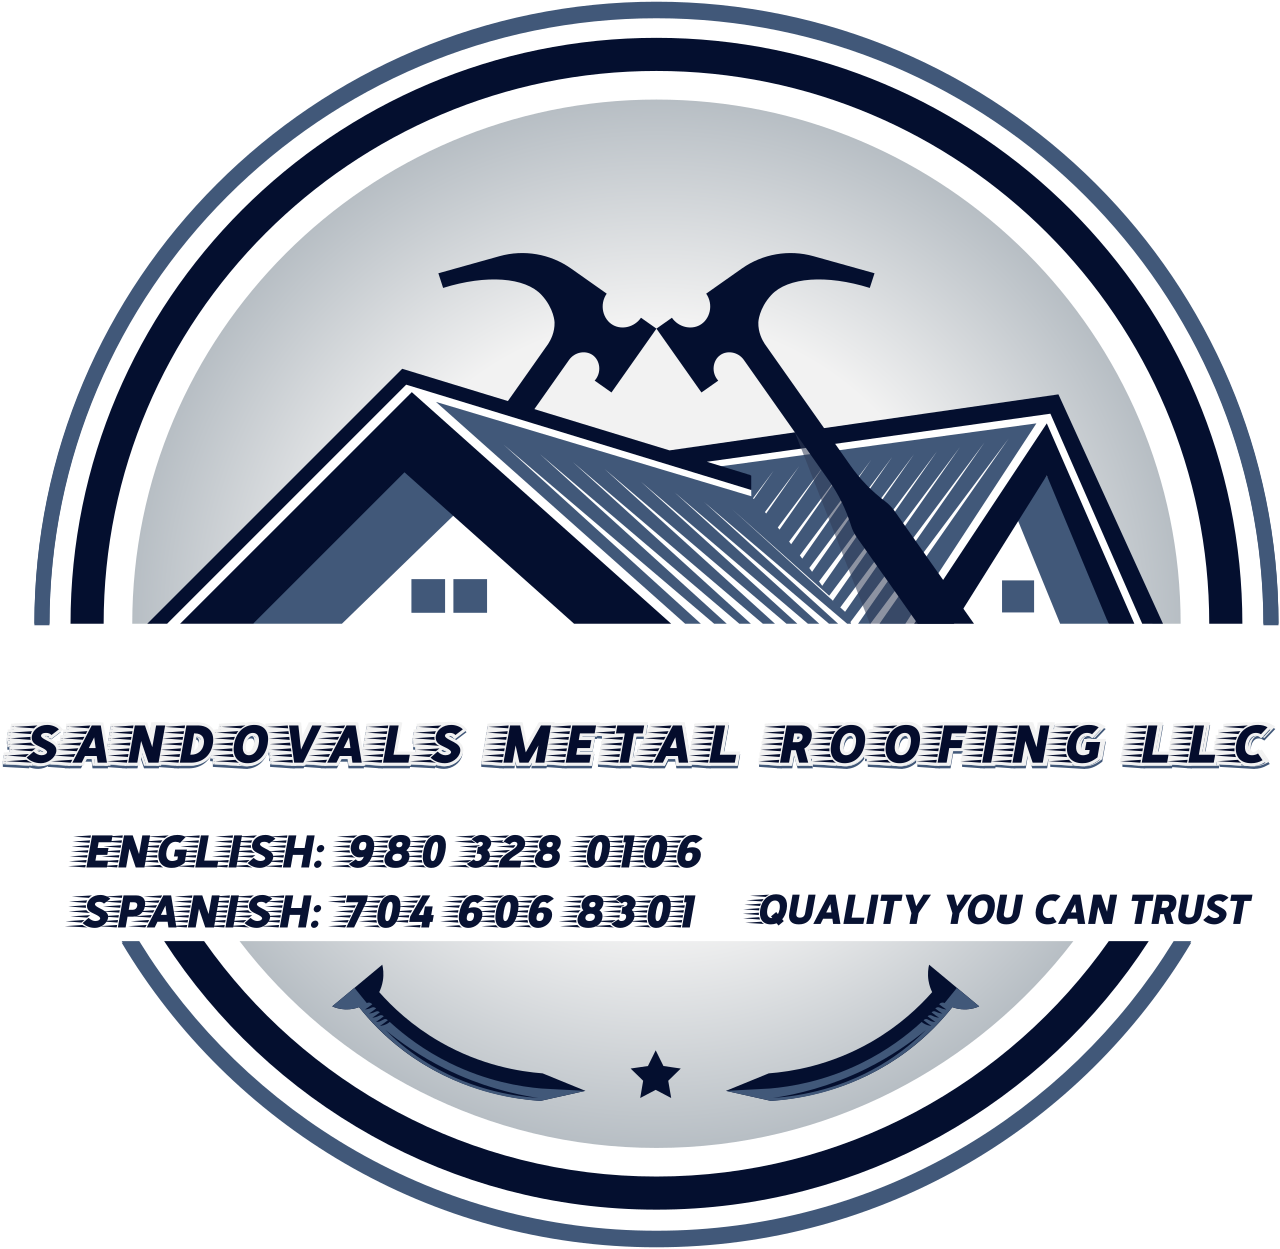 Sandovals Metal Roofing LLC's logo